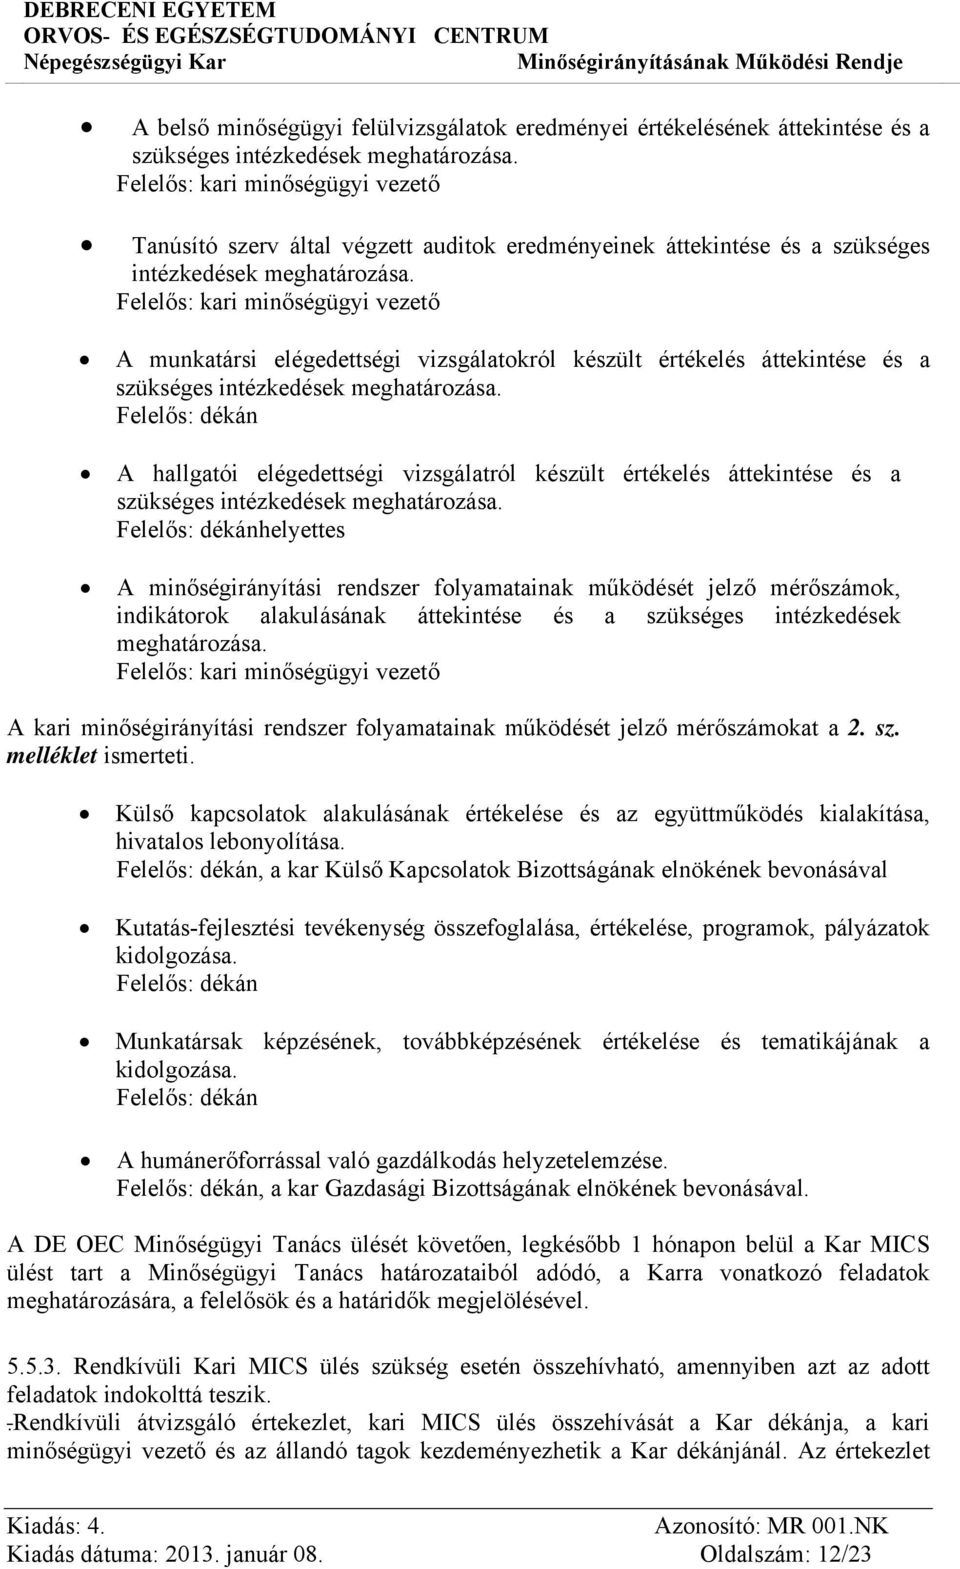 A Népegészségügyi Kar Minőségirányításának Működési Rendje MR 001. NK - PDF  Free Download